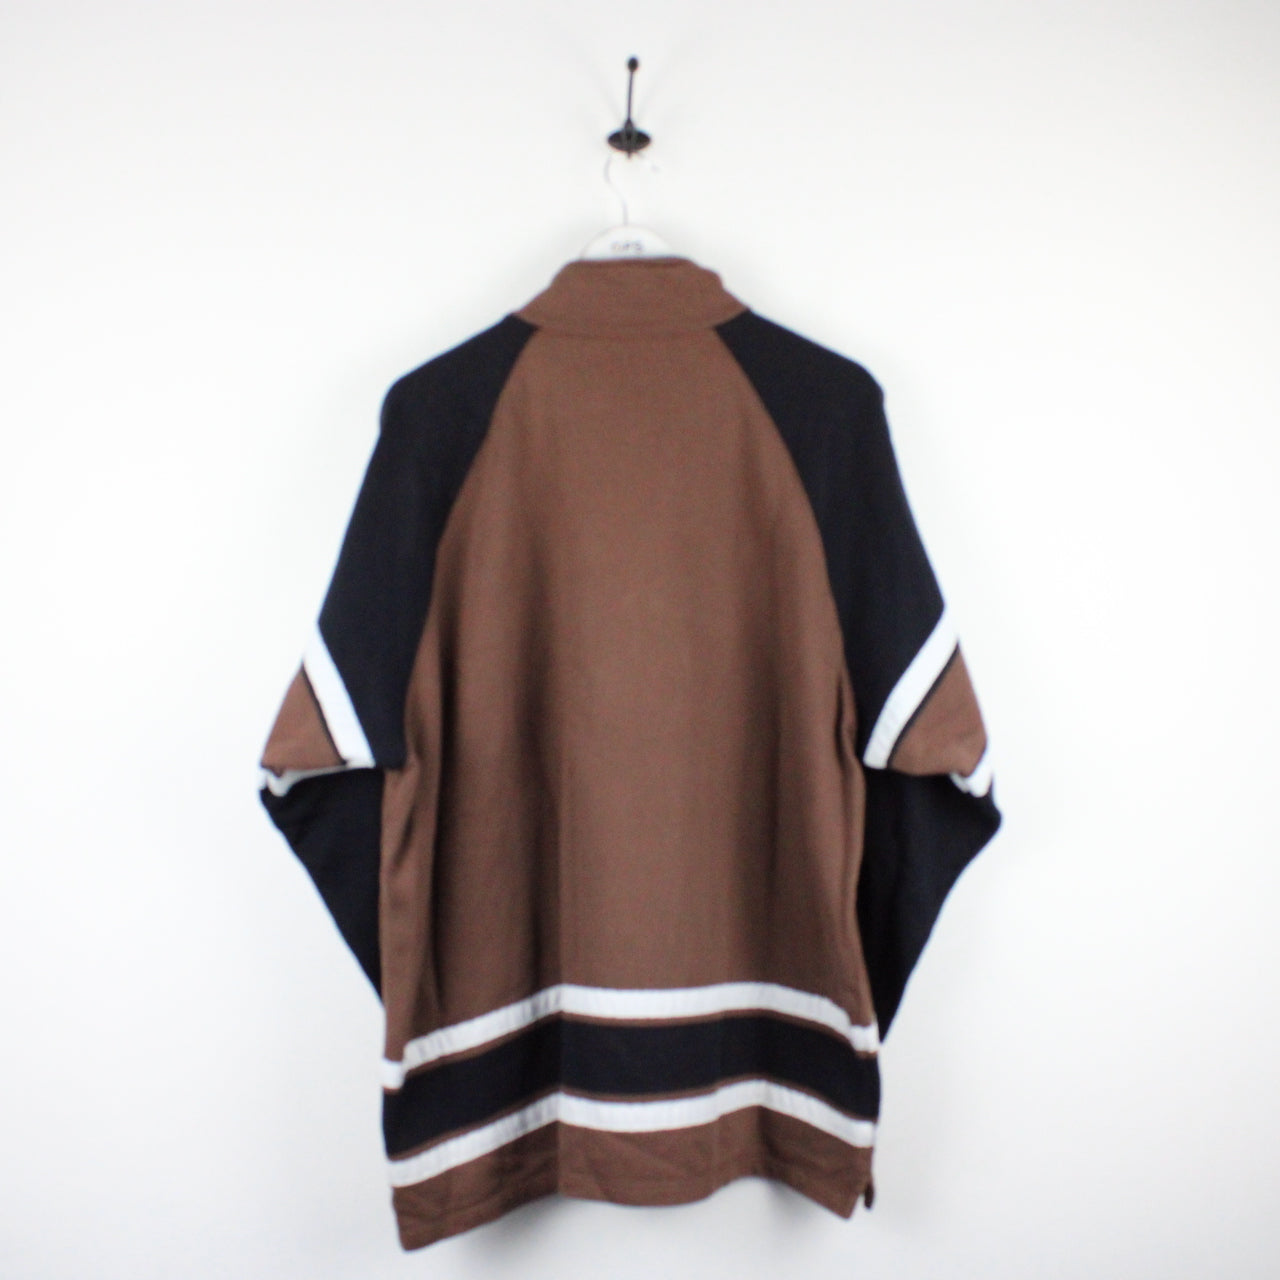 Vintage CHAMPION 1/4 Zip Sweatshirt Brown | XL